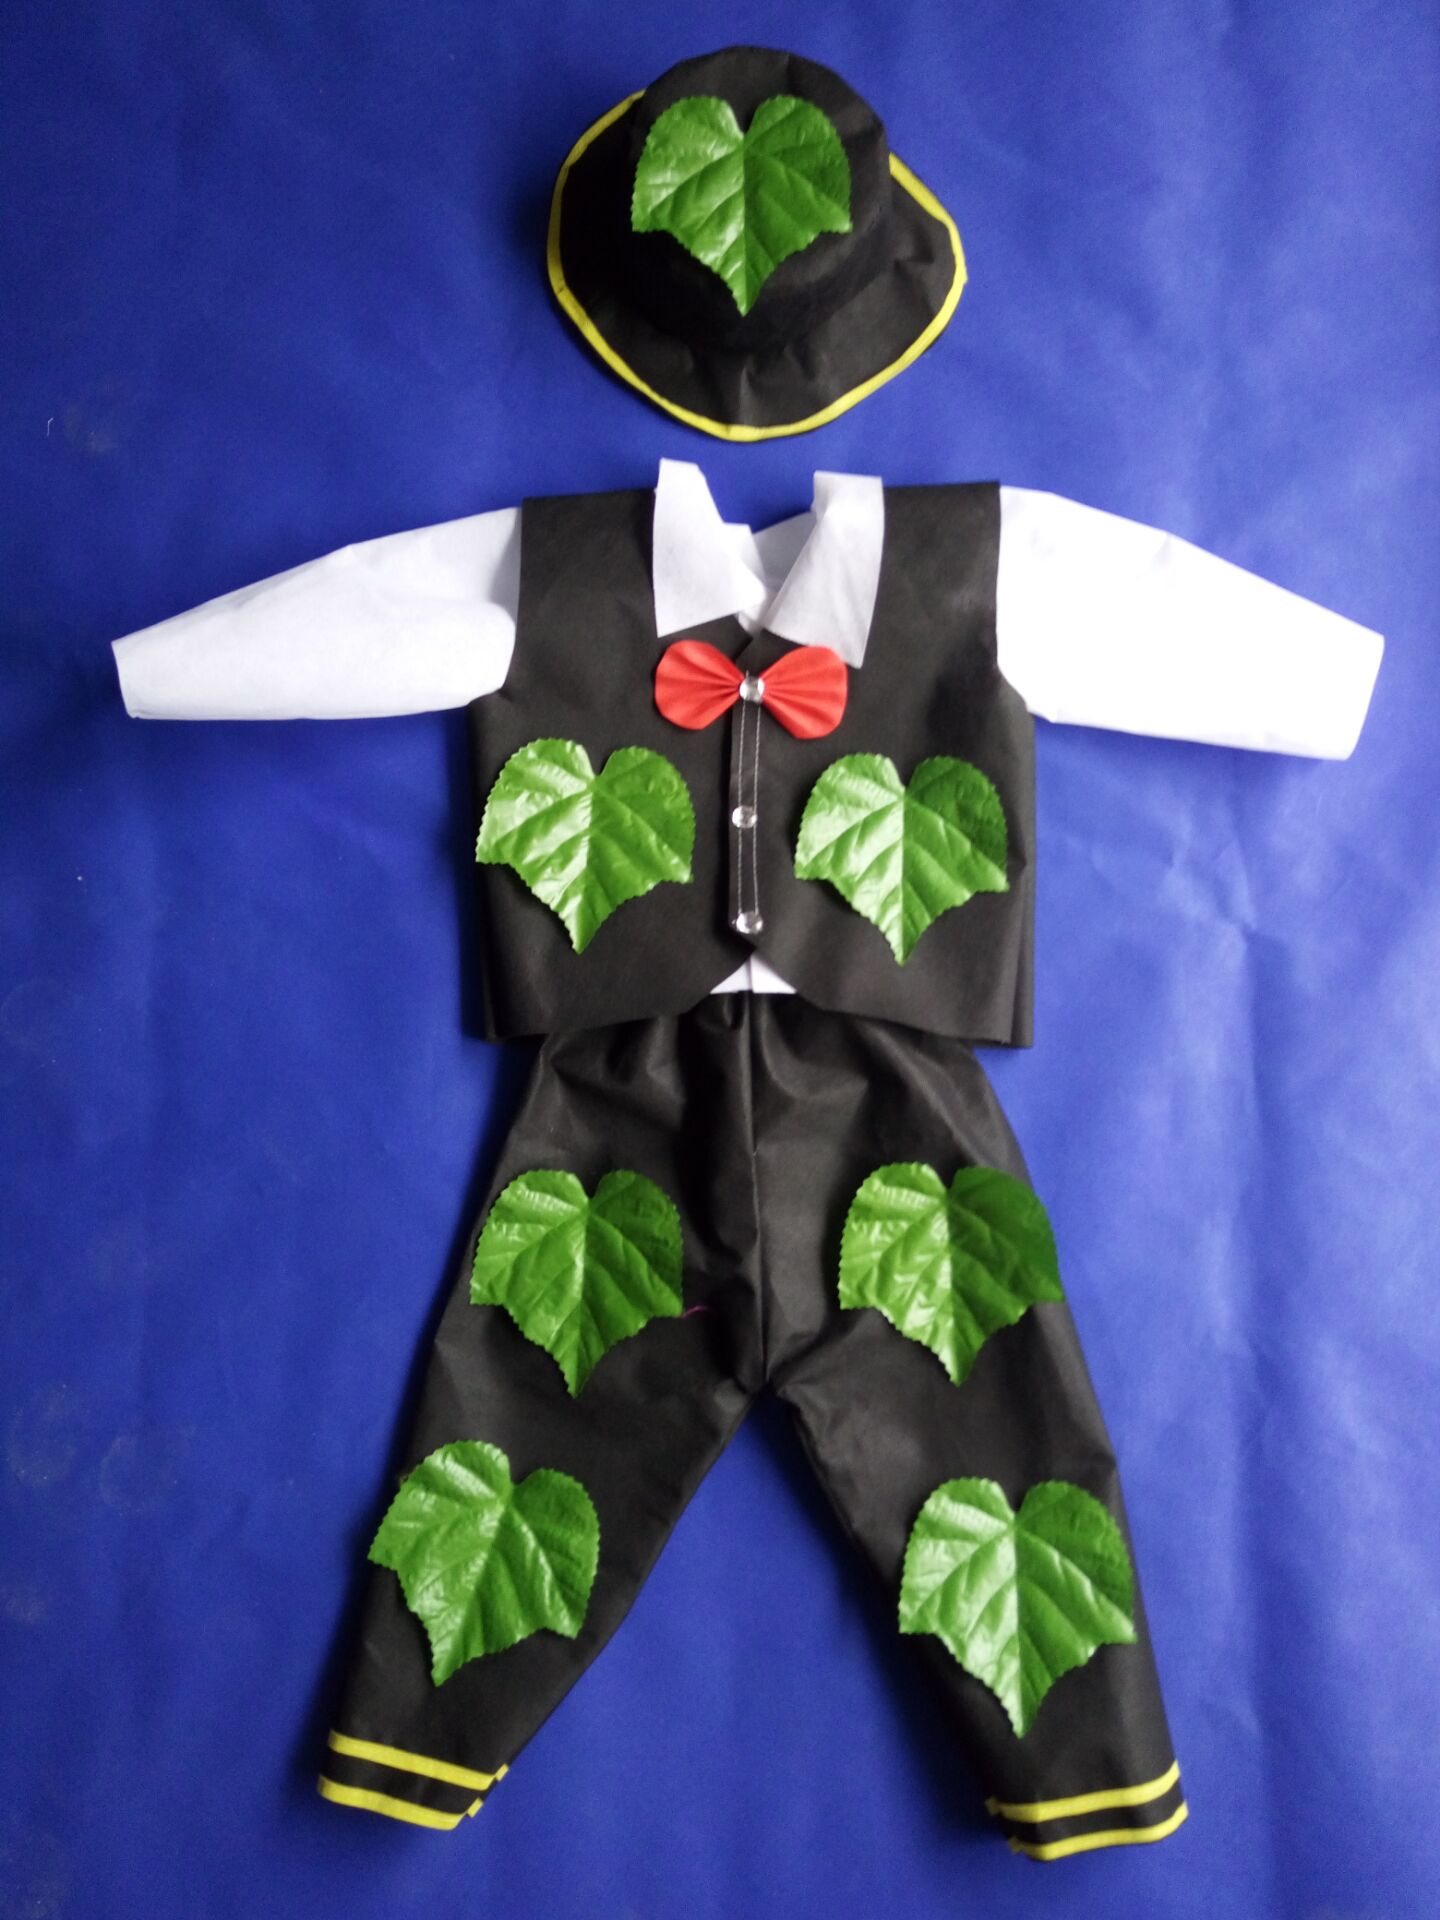 新款儿童幼儿园环保服装手工制作无纺布男童领带西服表演服时装秀